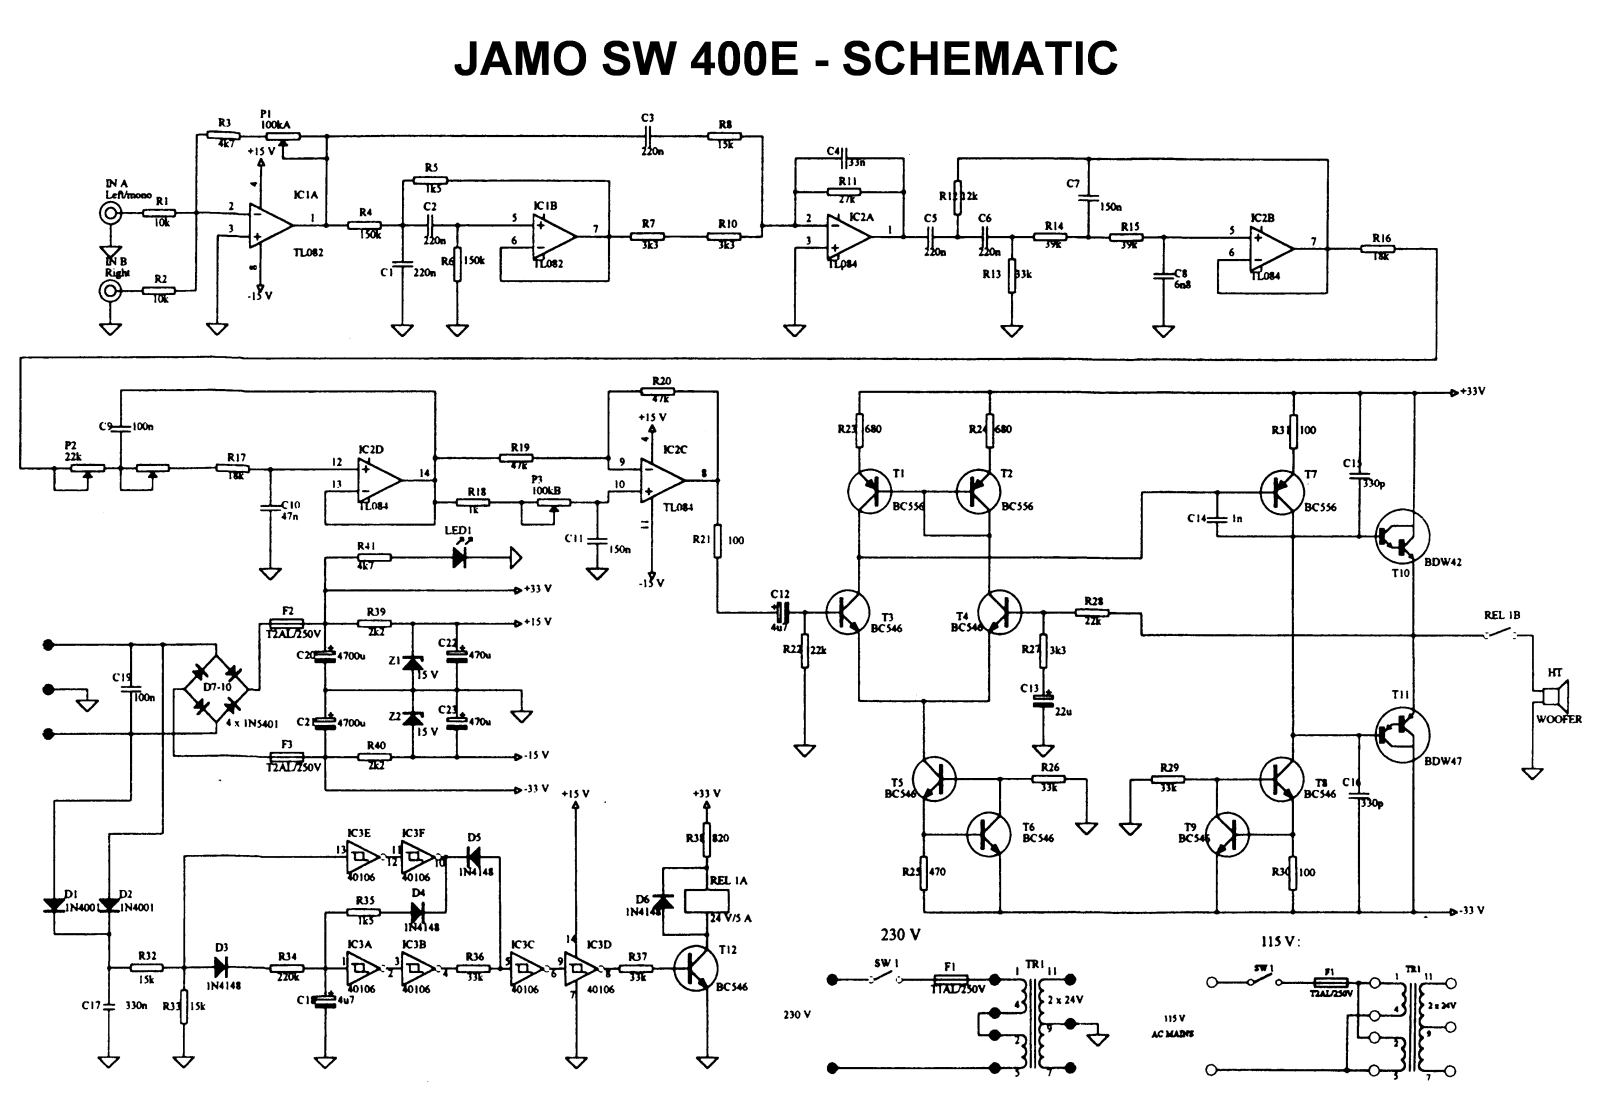 Jamo SW400E Schematic